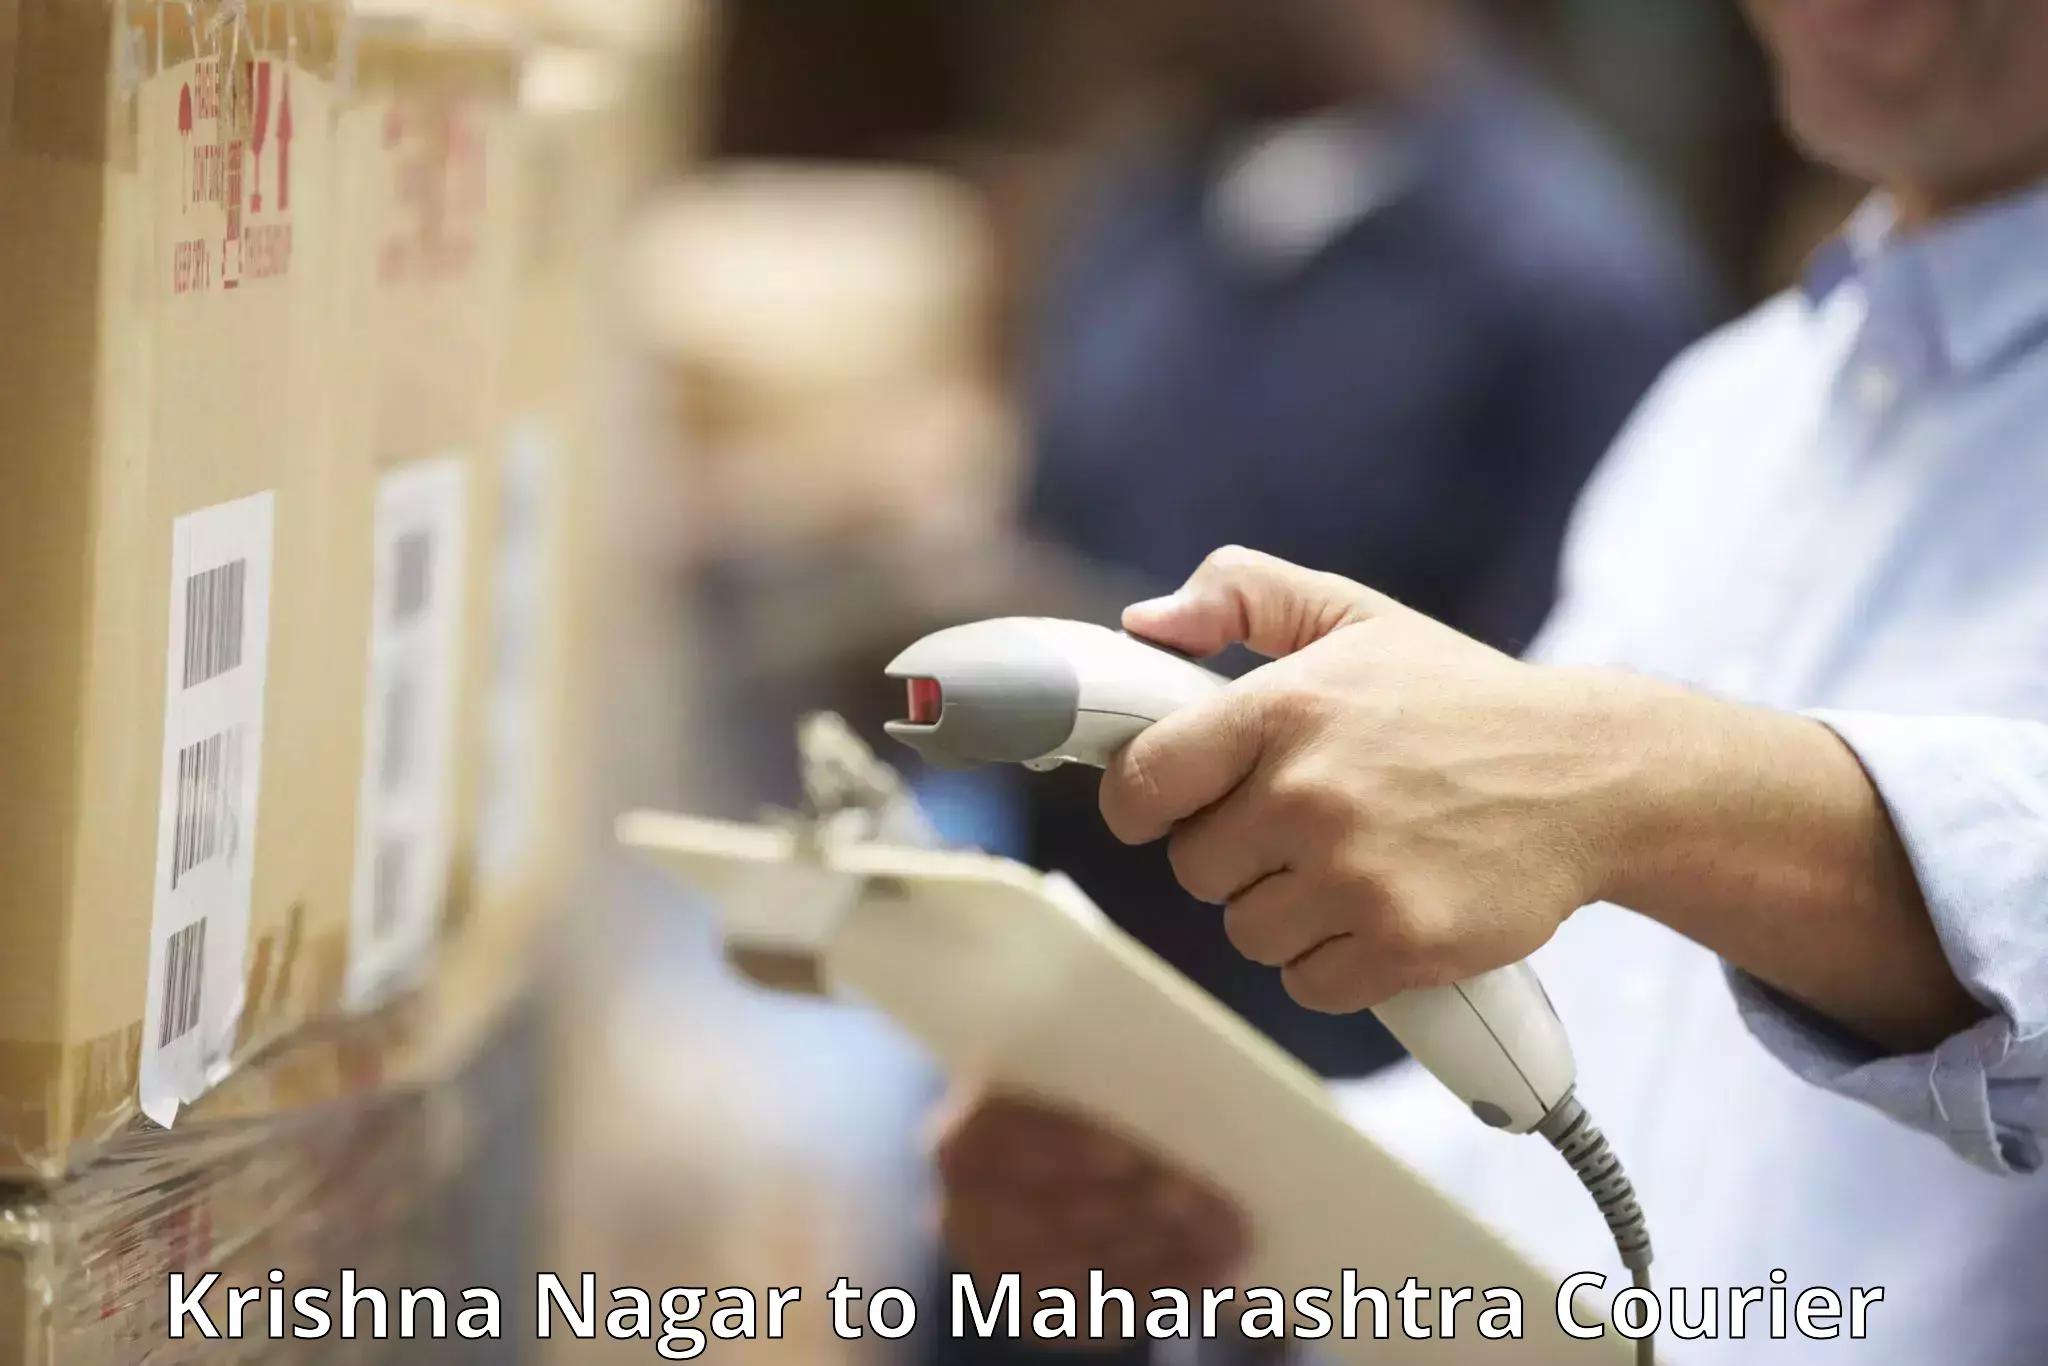 Baggage courier optimization Krishna Nagar to Karjat